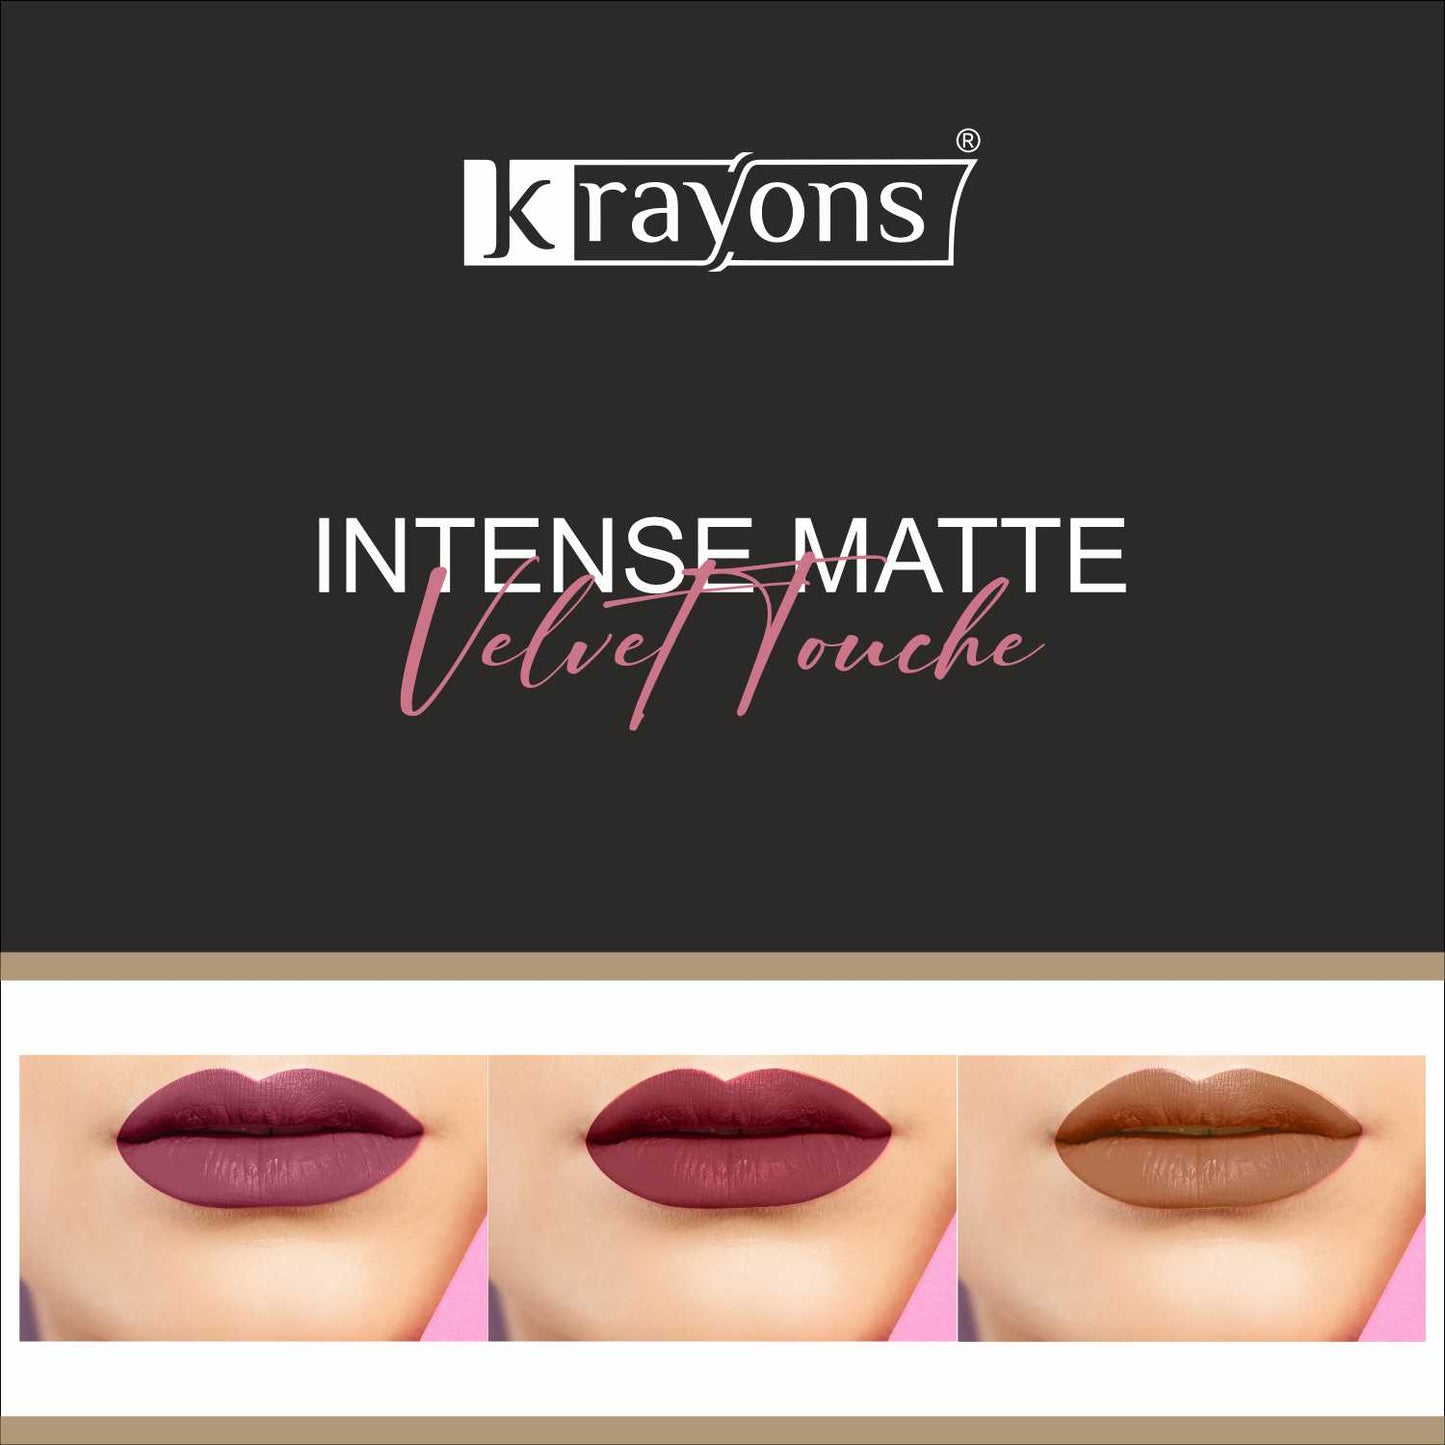 Krayons Intense Matte Lipstick, Waterproof, Longlasting, Rode Red, Cherry Maroon, Nude Beige, 3.5gm Each (Pack of 3)